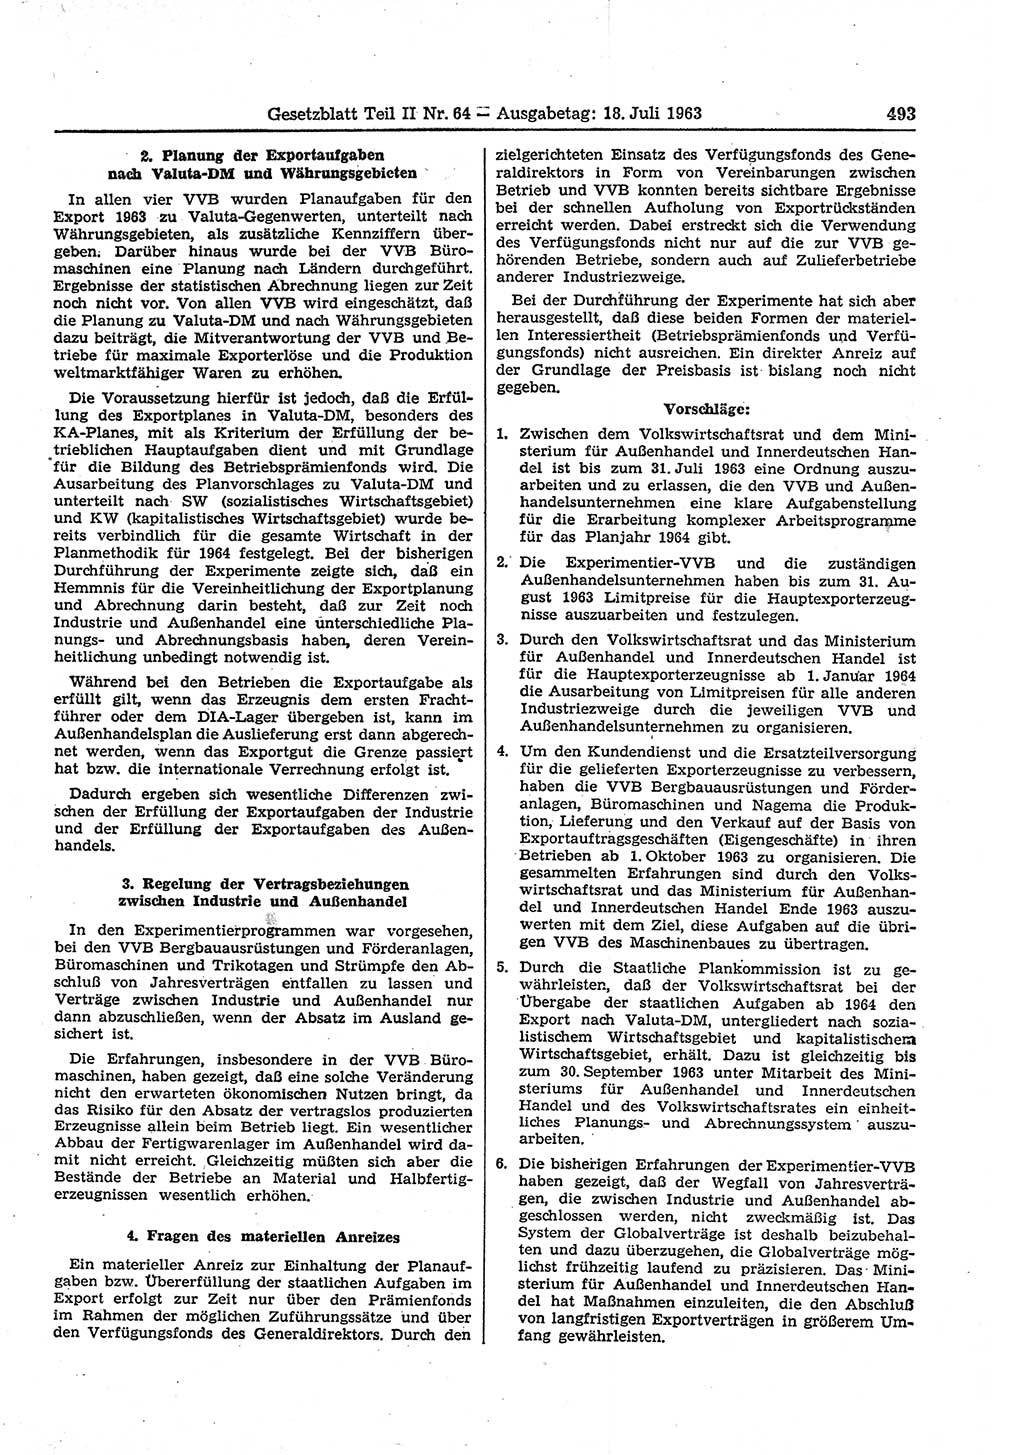 Gesetzblatt (GBl.) der Deutschen Demokratischen Republik (DDR) Teil ⅠⅠ 1963, Seite 493 (GBl. DDR ⅠⅠ 1963, S. 493)